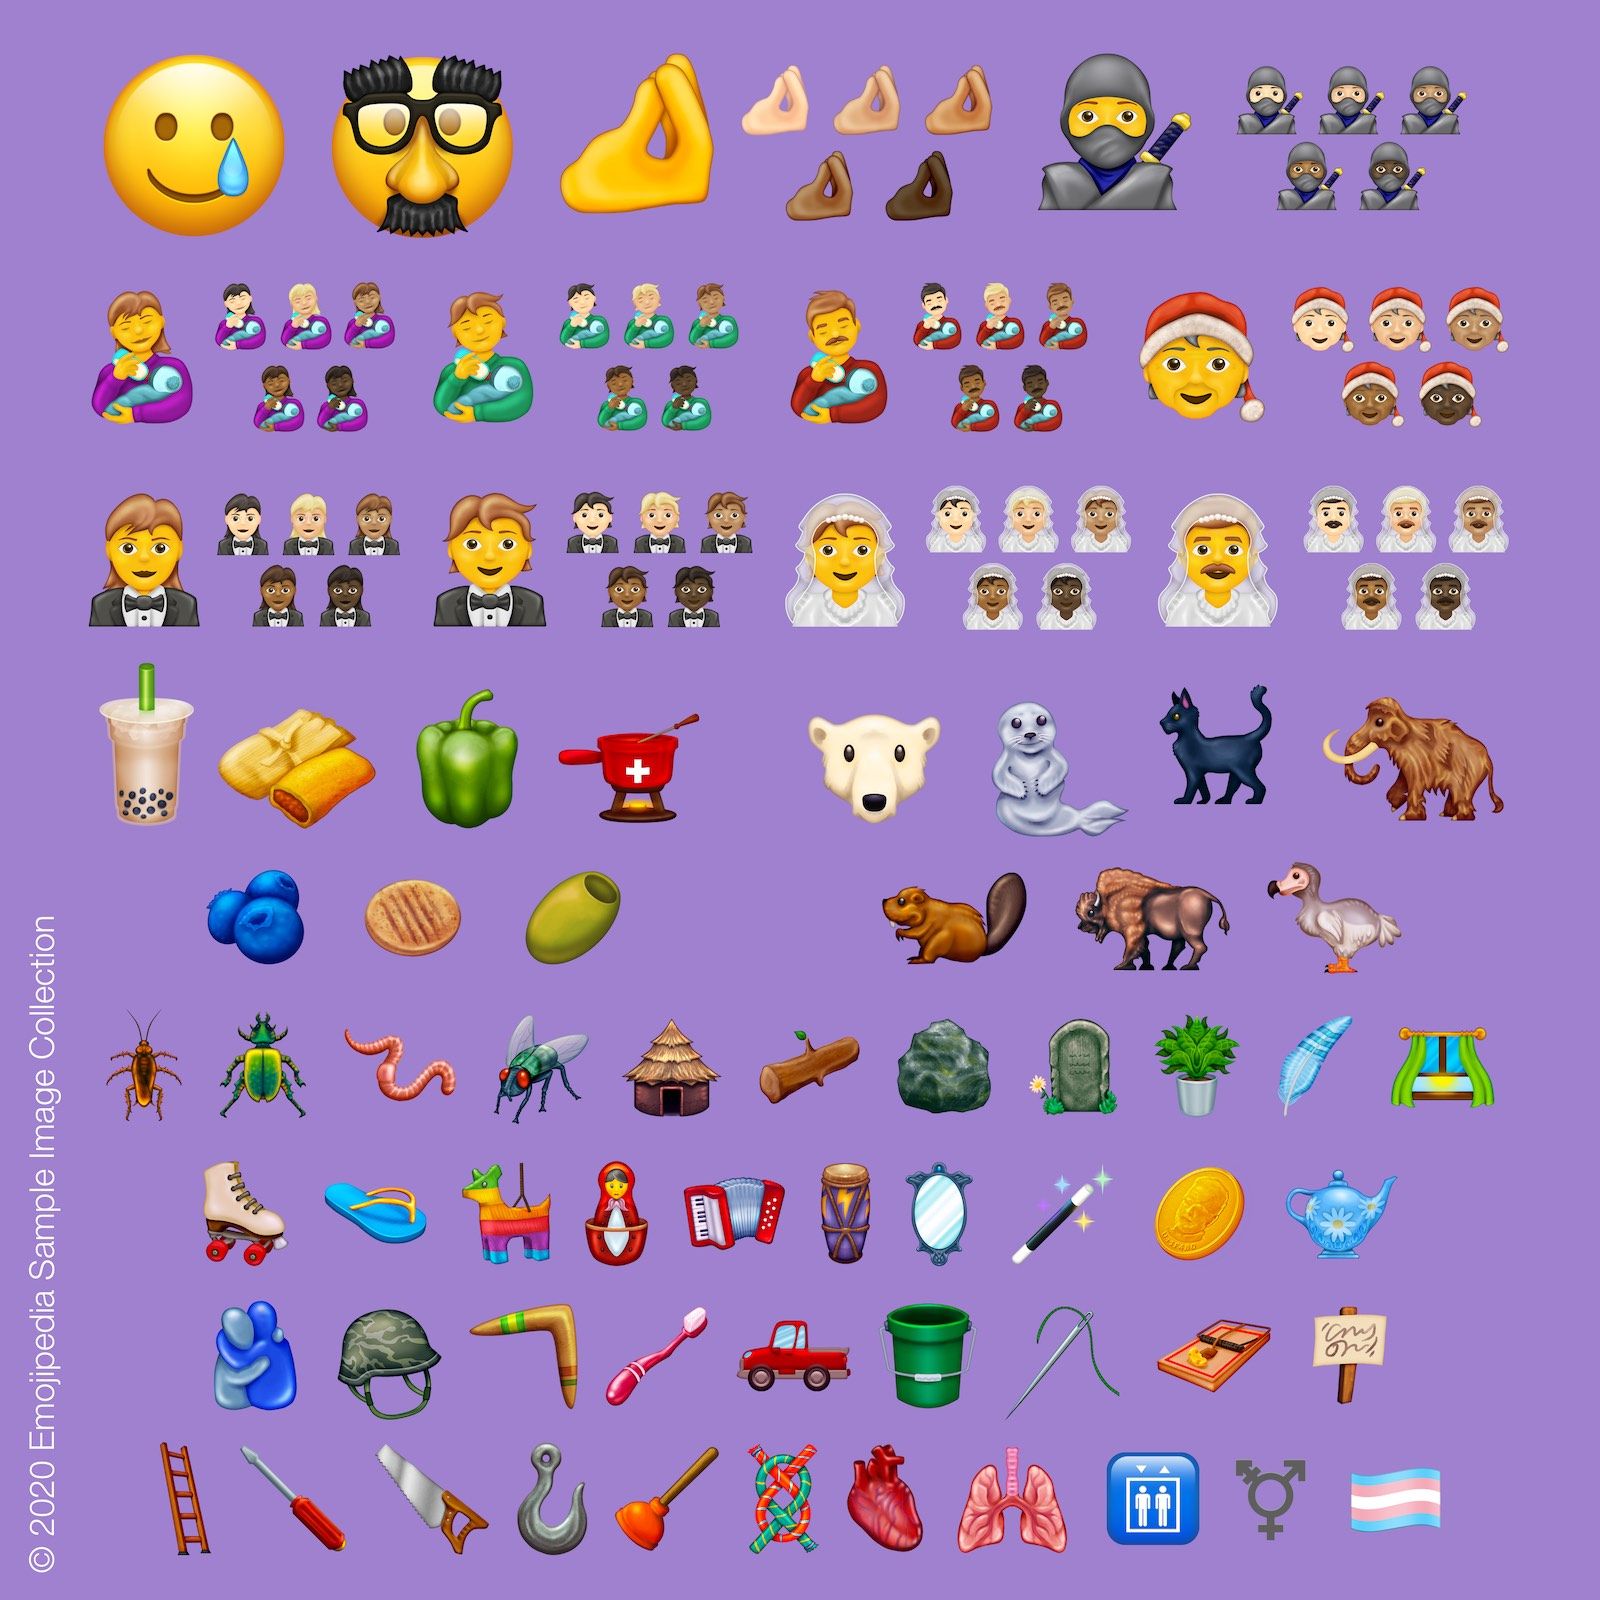 Imágenes originales de Emojipedia que muestran cómo pueden verse los nuevos emojis.